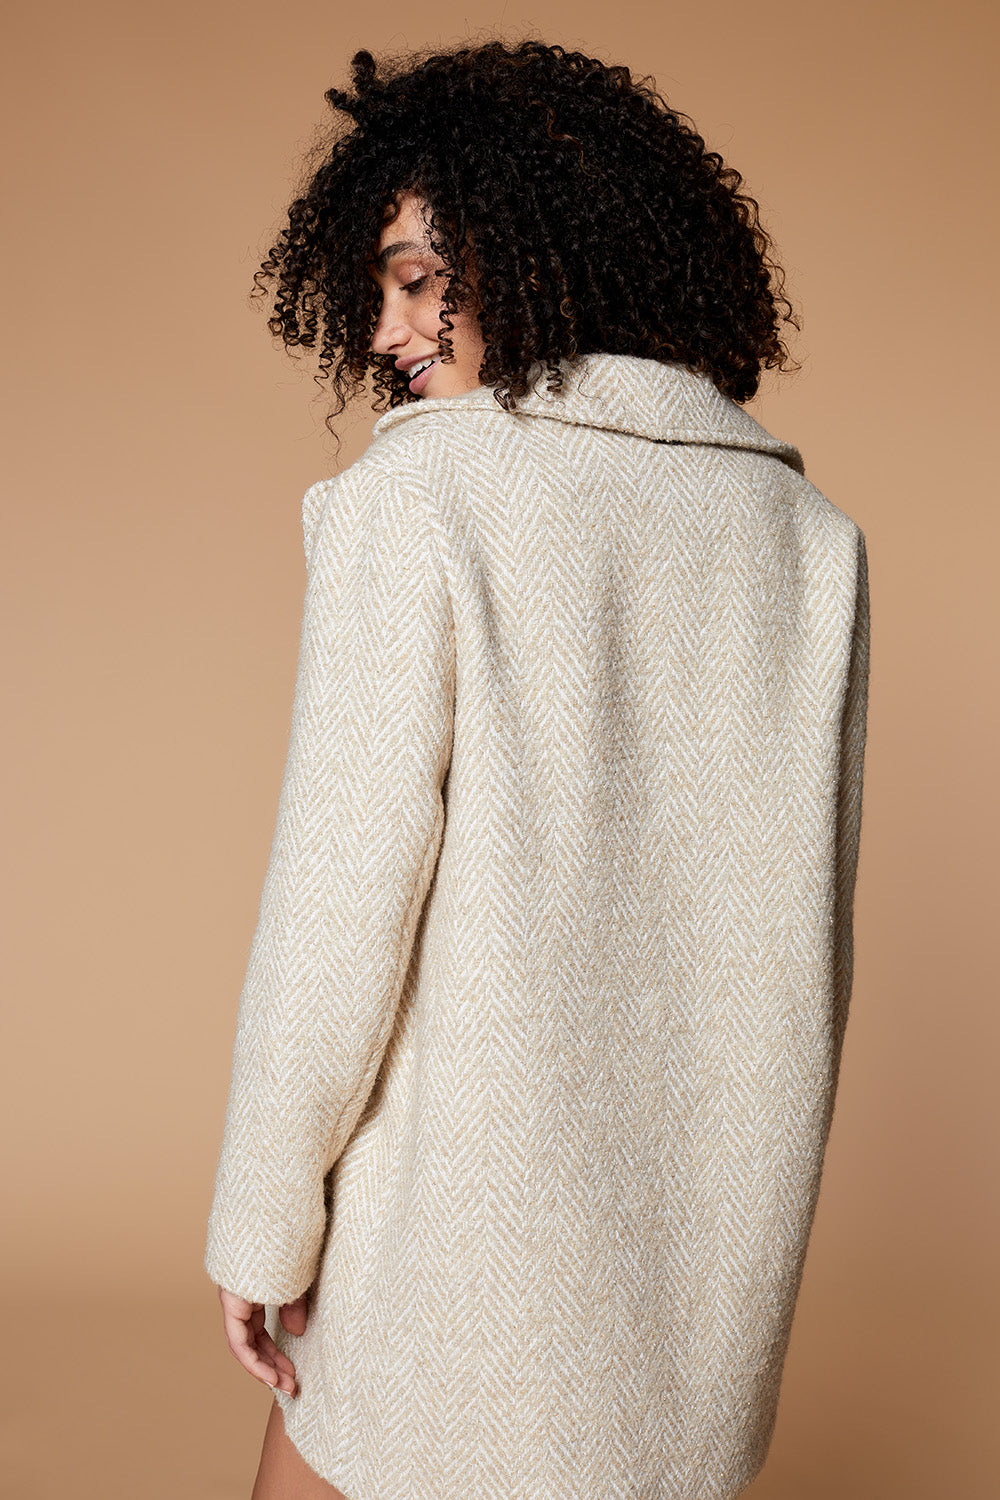 DADOU - Manteau ficelle lainage fantaisie à motif chevrons